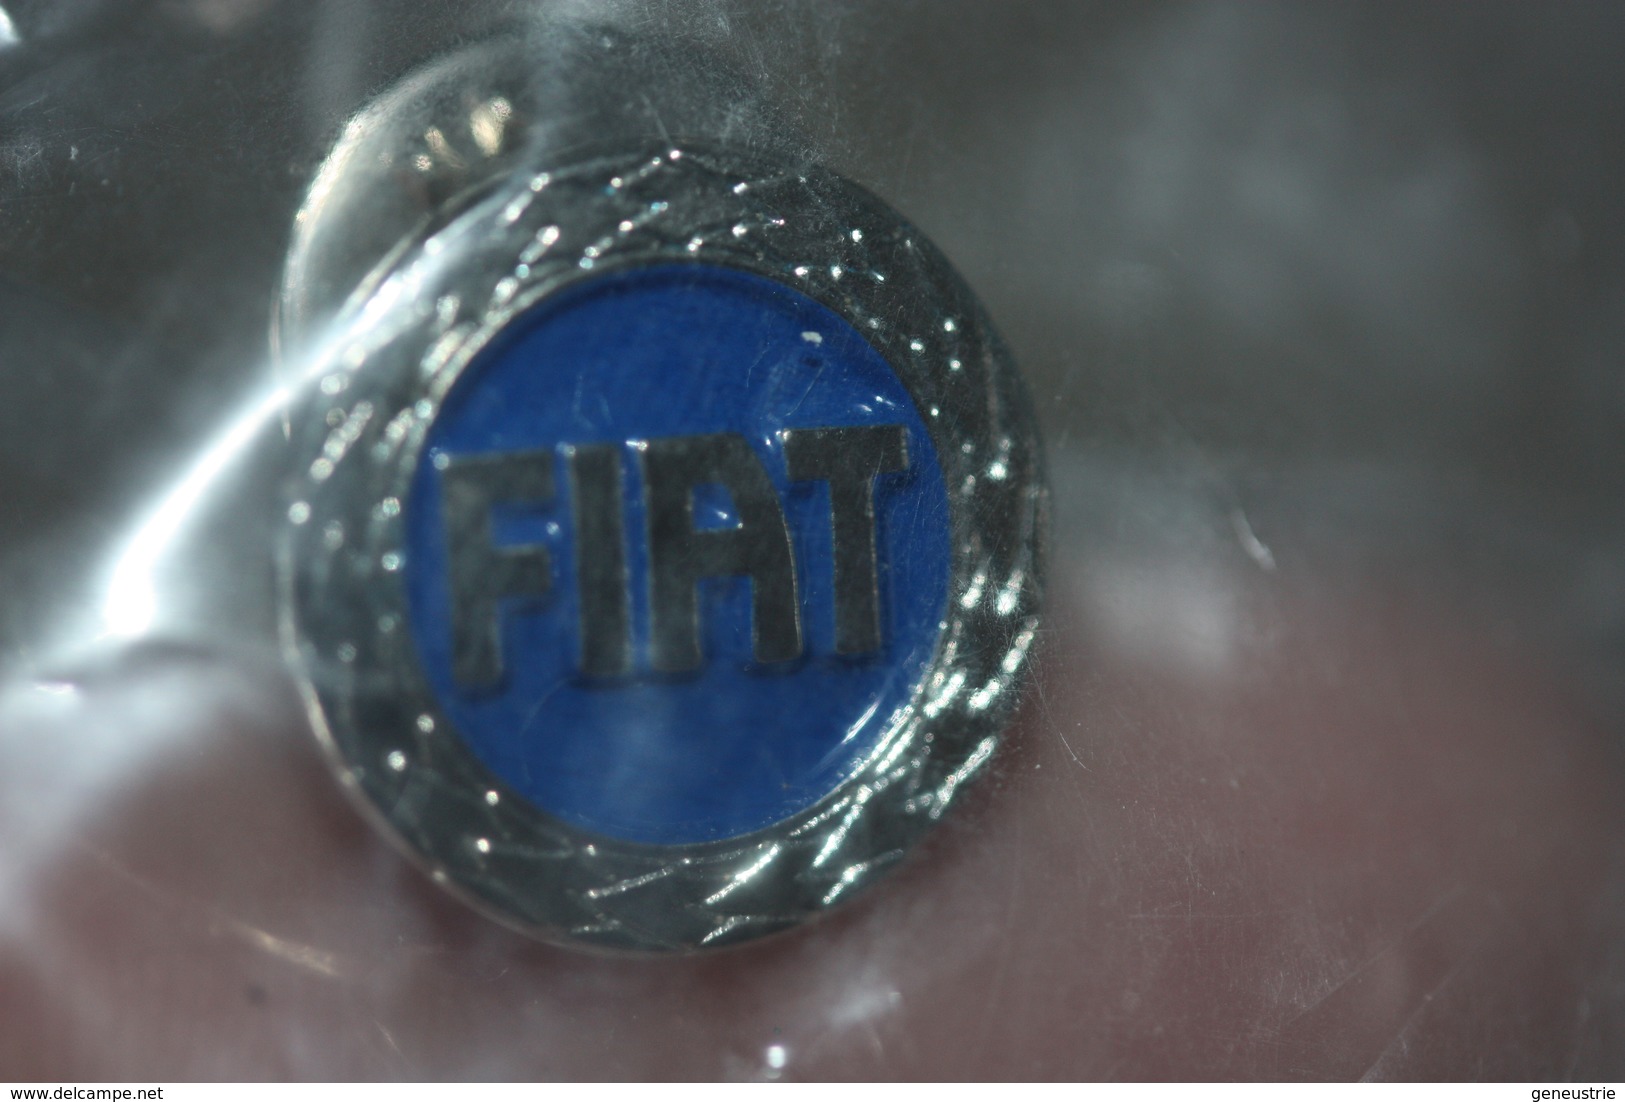 Pin's Badge épinglette Officiel Automobiles FIAT (dans Emballage D'origine Avec Référence) - Fiat